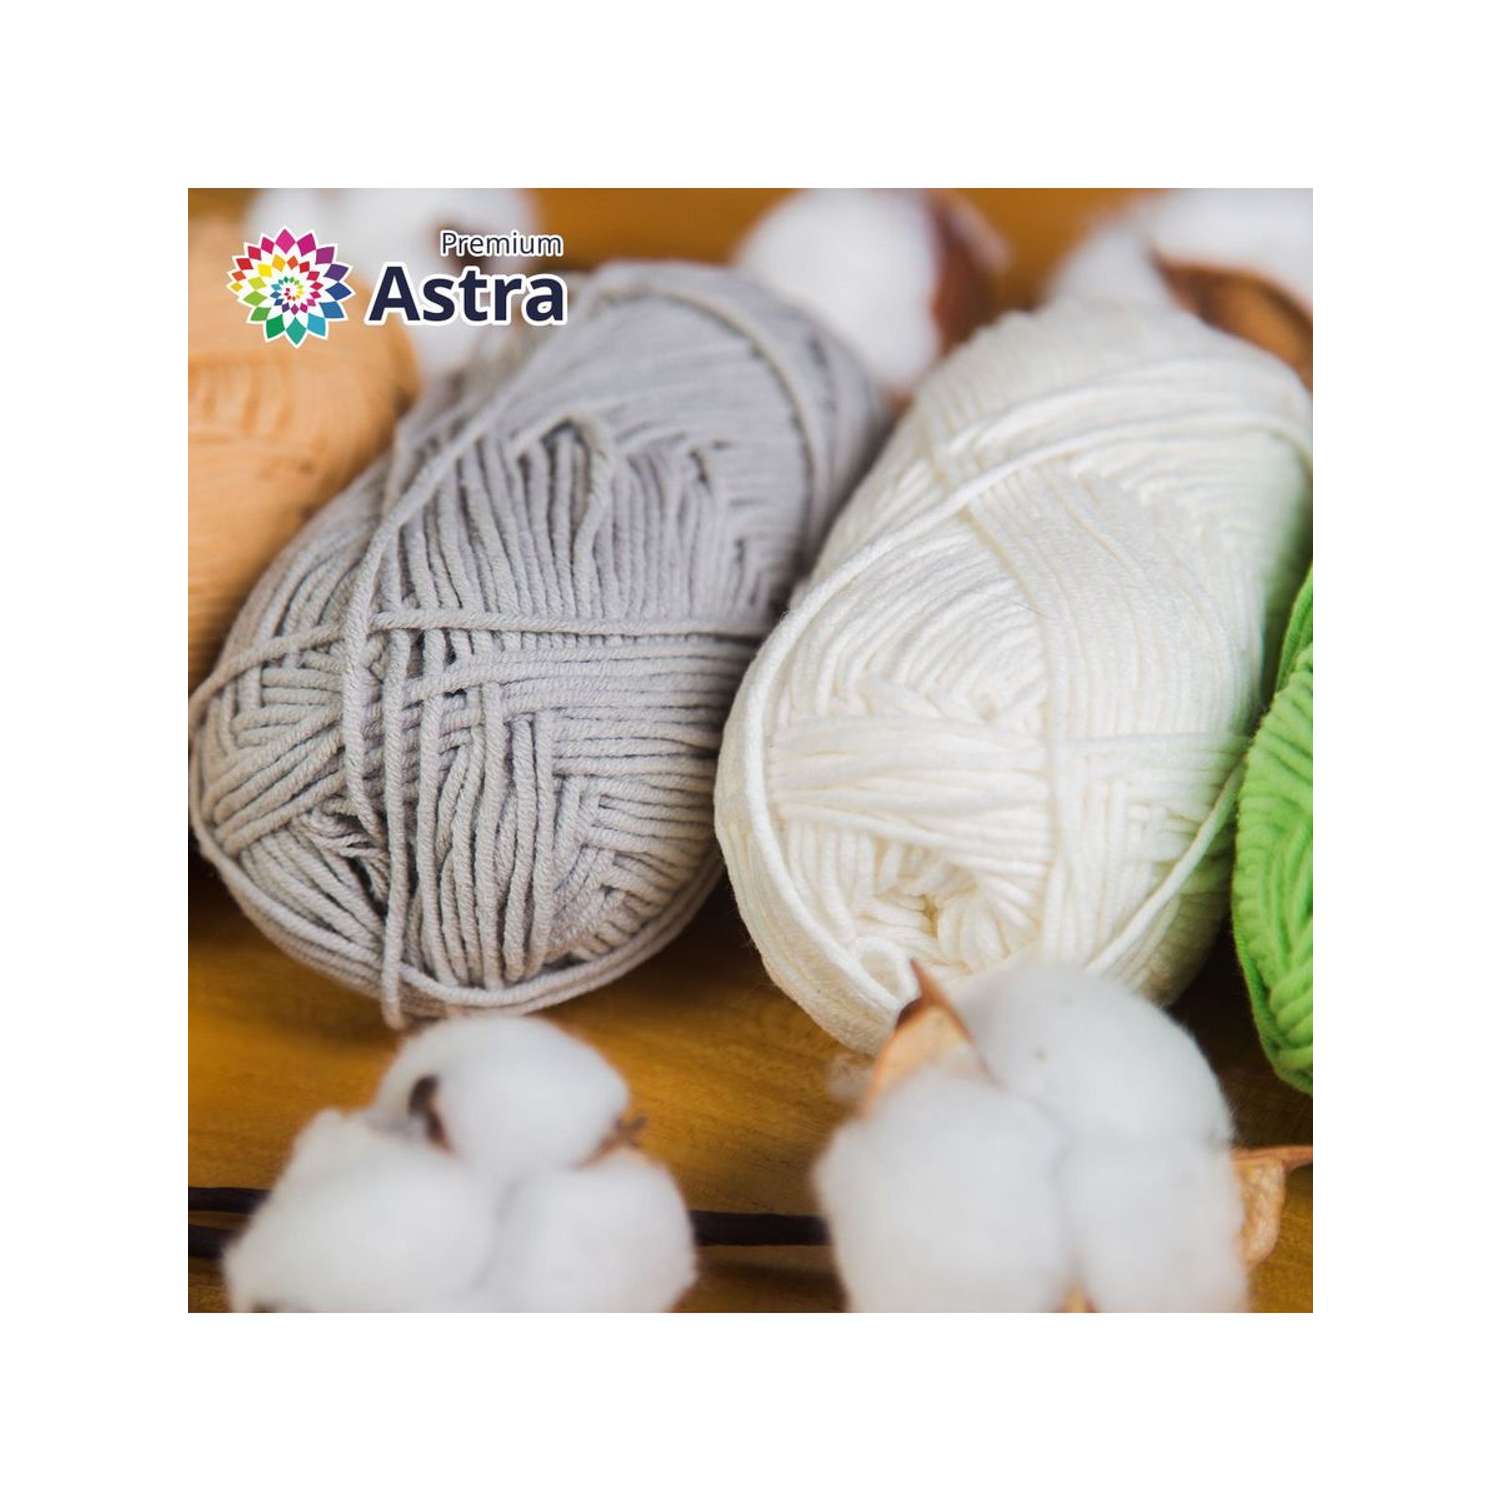 Пряжа для вязания Astra Premium джинс для повседневной одежды акрил хлопок 50 гр 135 м 910 серый 4 мотка - фото 7